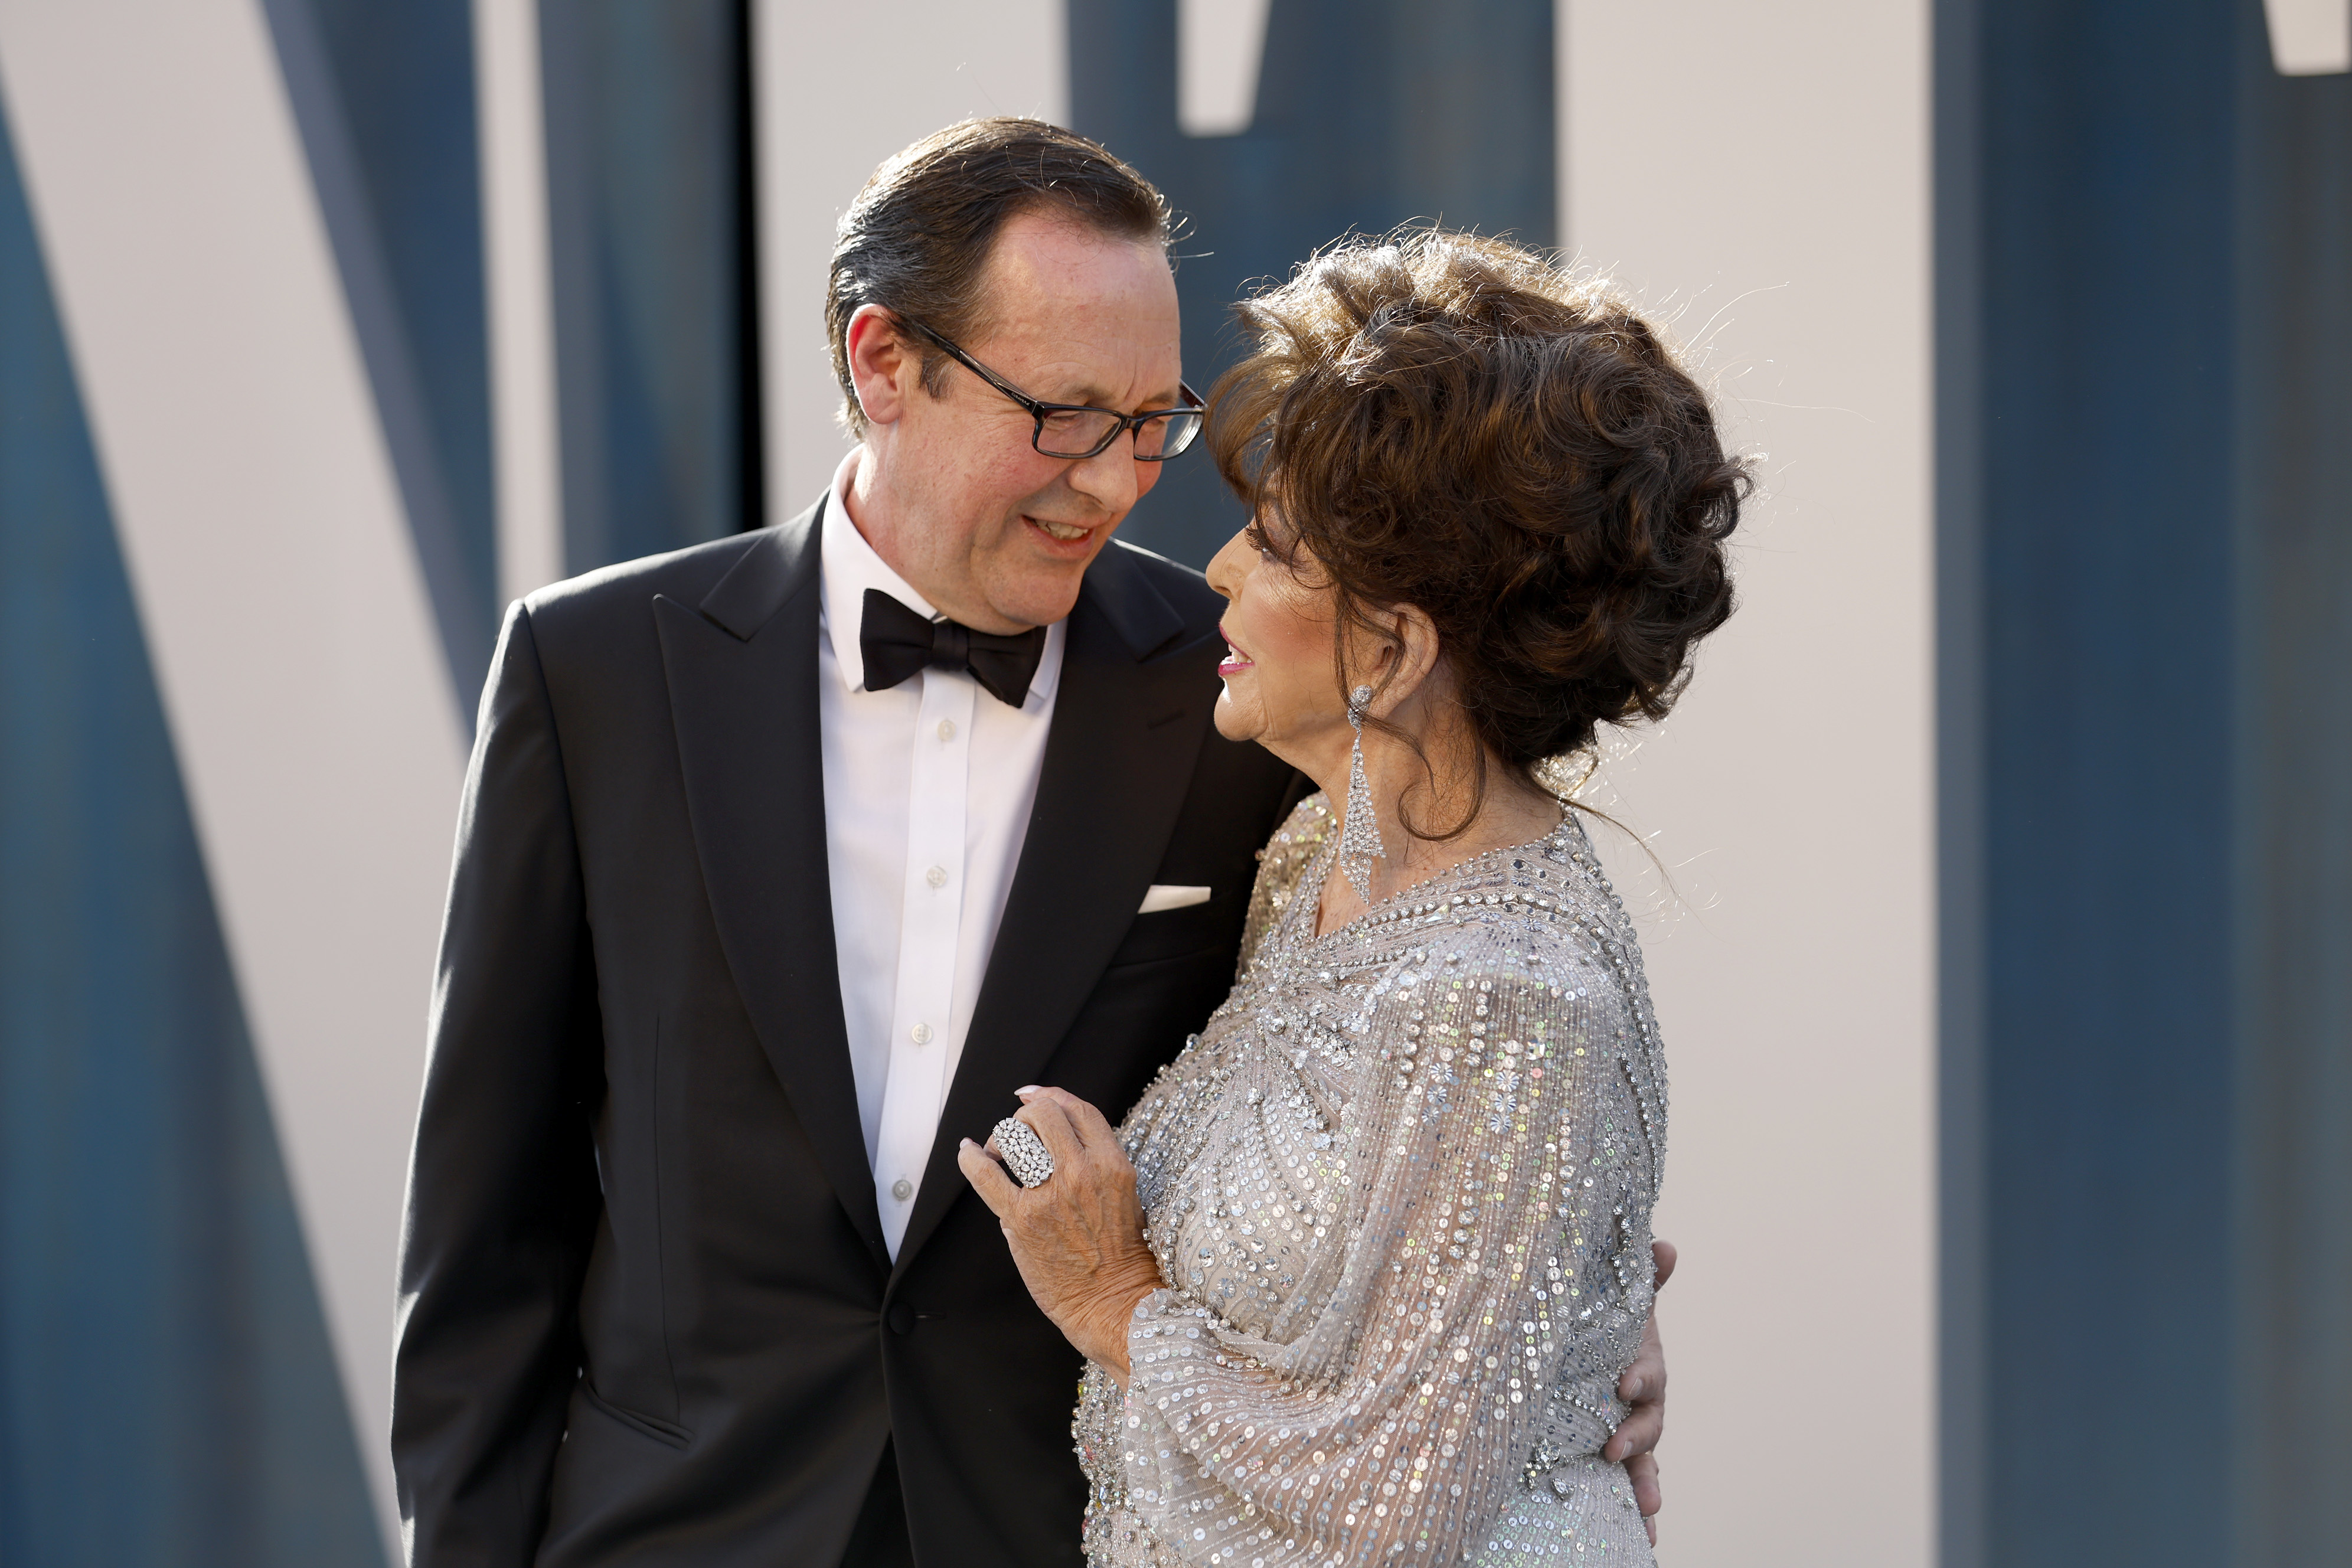 Percy Gibson et Joan Collins à la soirée des Oscars 2022 de Vanity Fair au Wallis Annenberg Center for the Performing Arts le 27 mars 2022 à Beverly Hills, en Californie. | Source : Getty Images